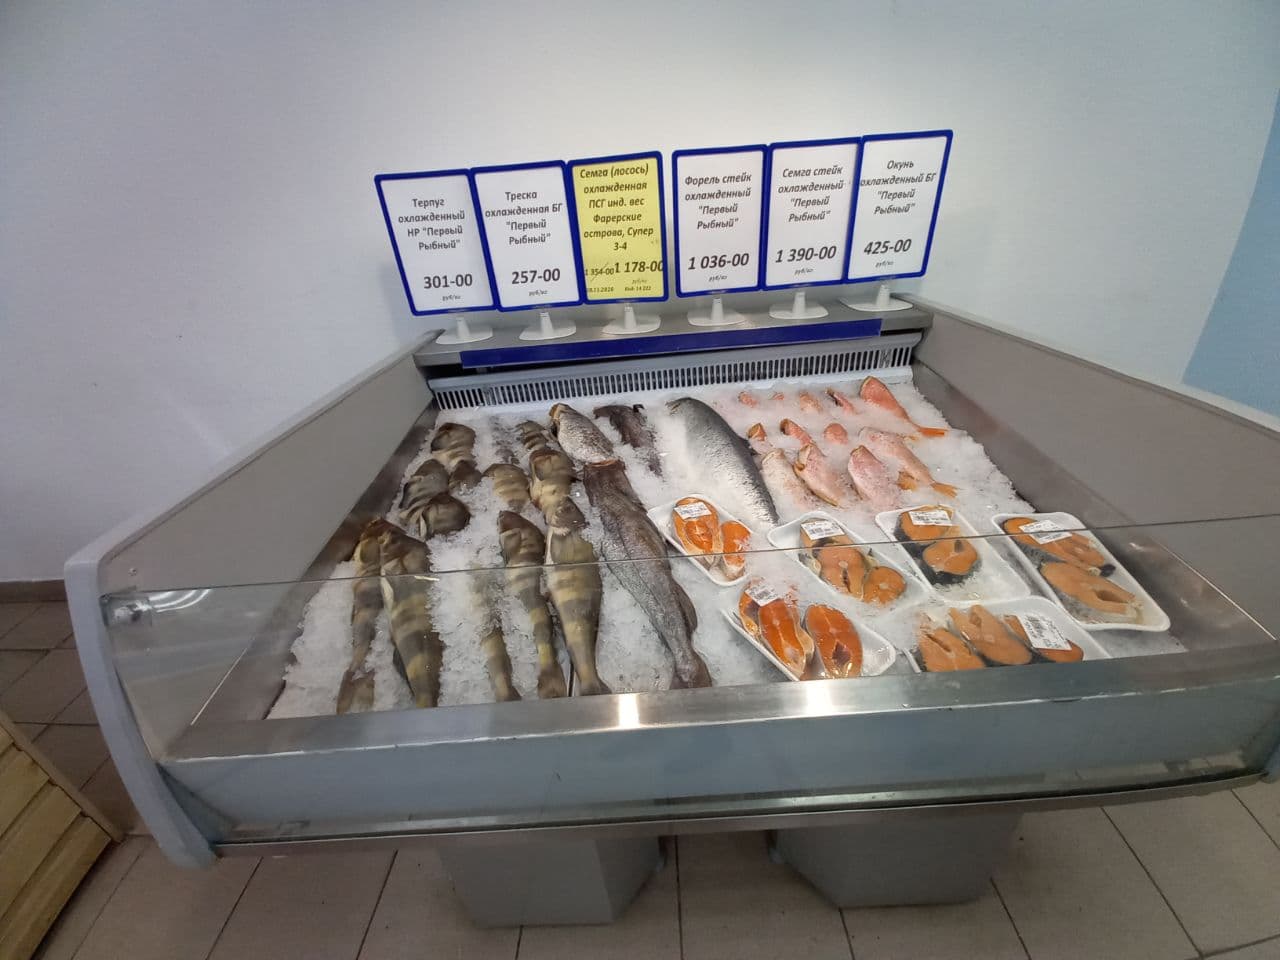 Магазин Первый Рыбный В Екатеринбурге